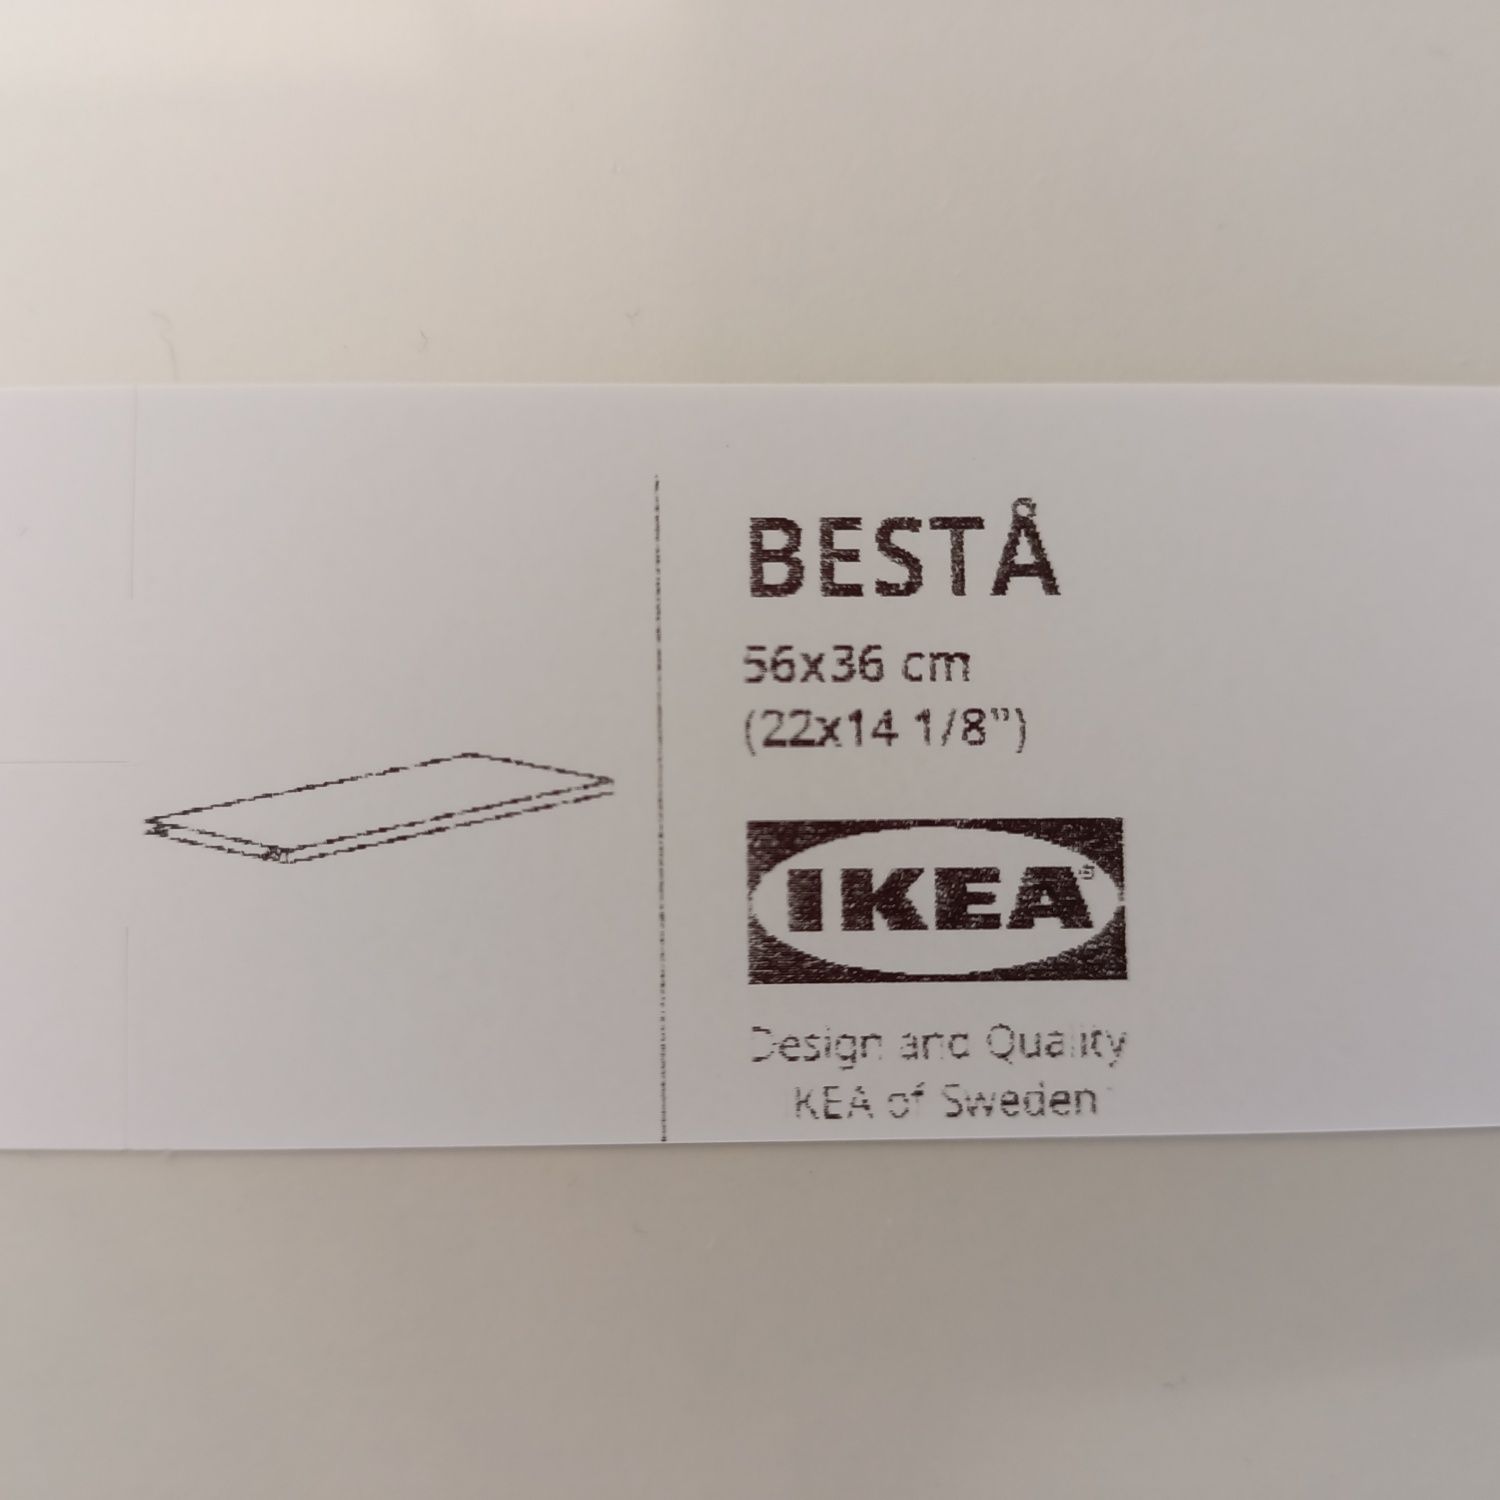 Półka biała BESTA IKEA 56 x 36 cm